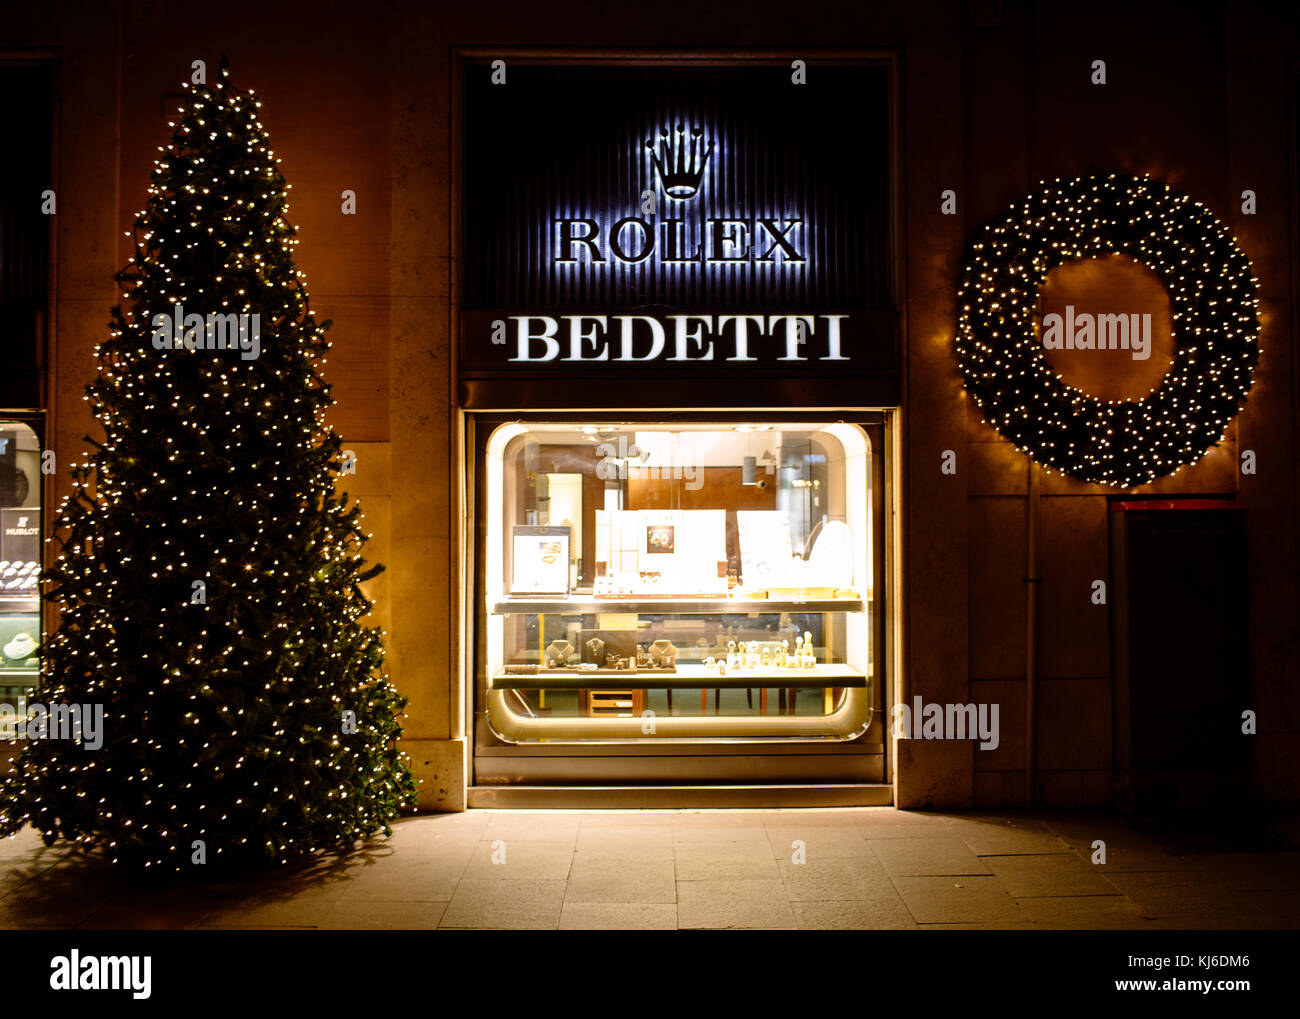 Roma, Italia- Novembre 18, 2017: tempo di Natale a Bedetti negozio con una tradizione di più di cento anni, la gamma di qualità di Haute Horlogerie marchi e Foto Stock